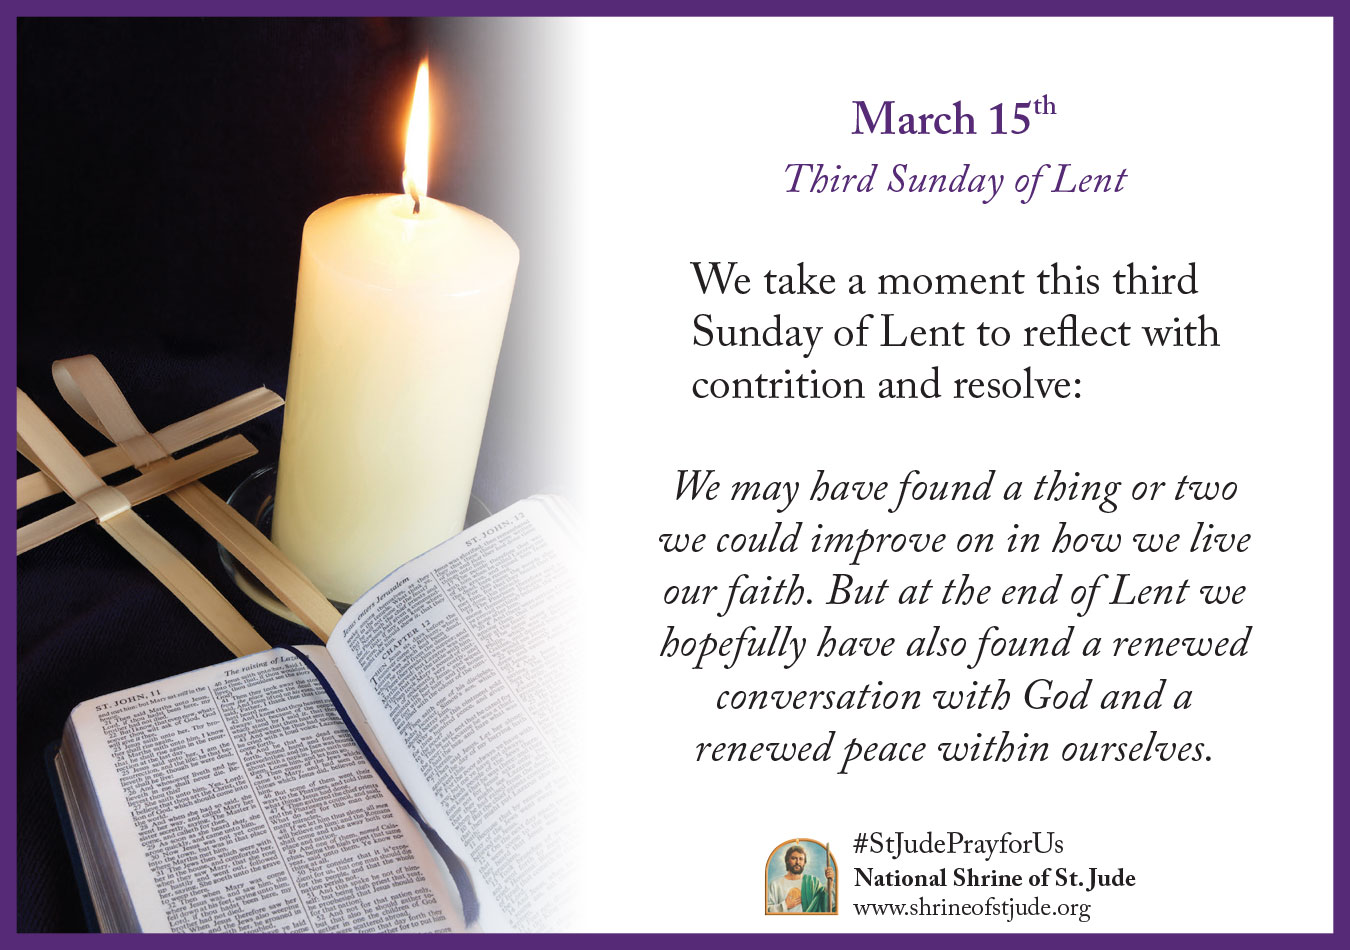 Third Sunday of Lent 2020 Reflection